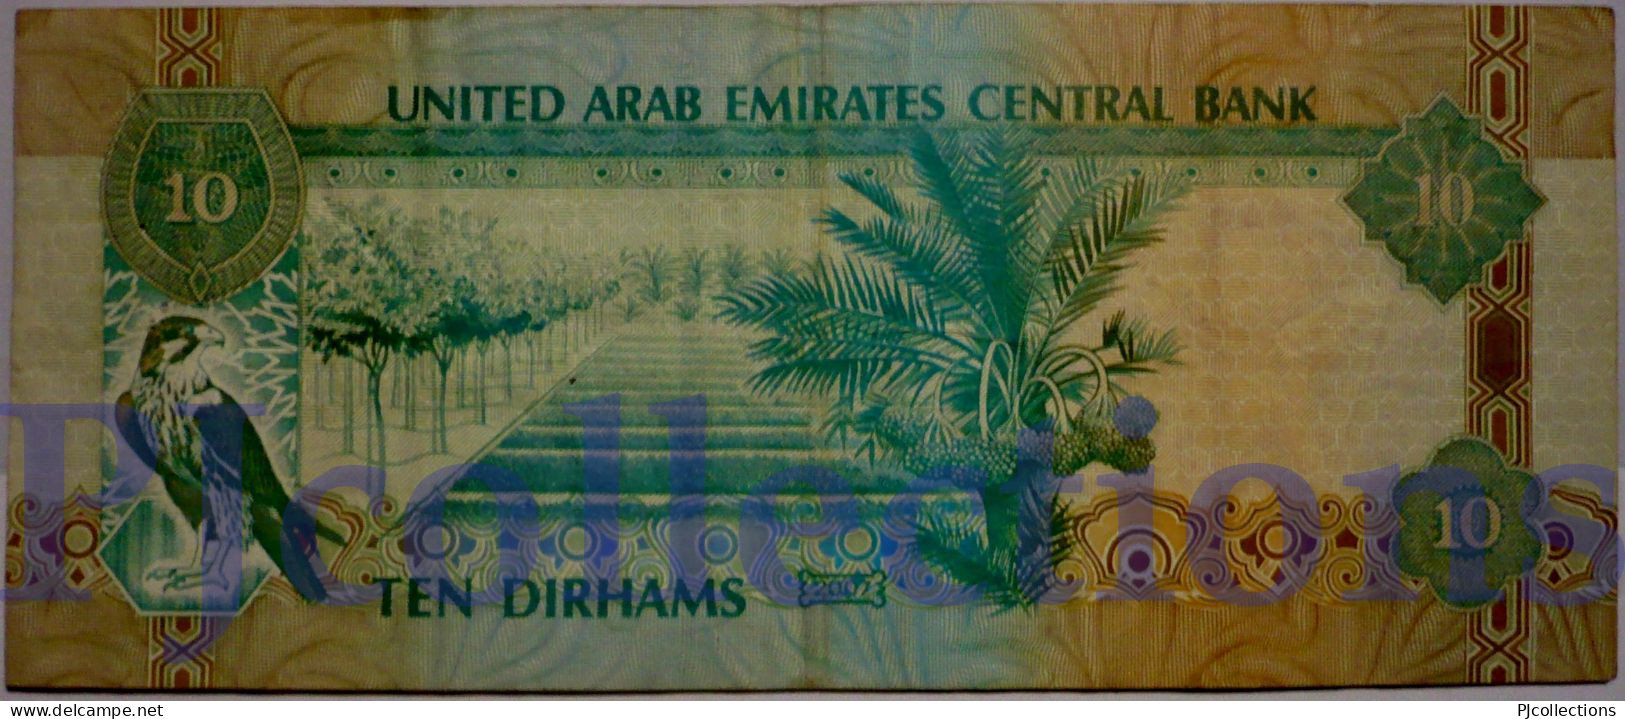 UNITED ARAB EMIRATES 10 DIRHAMS 2007 PICK 20d VF - Ver. Arab. Emirate